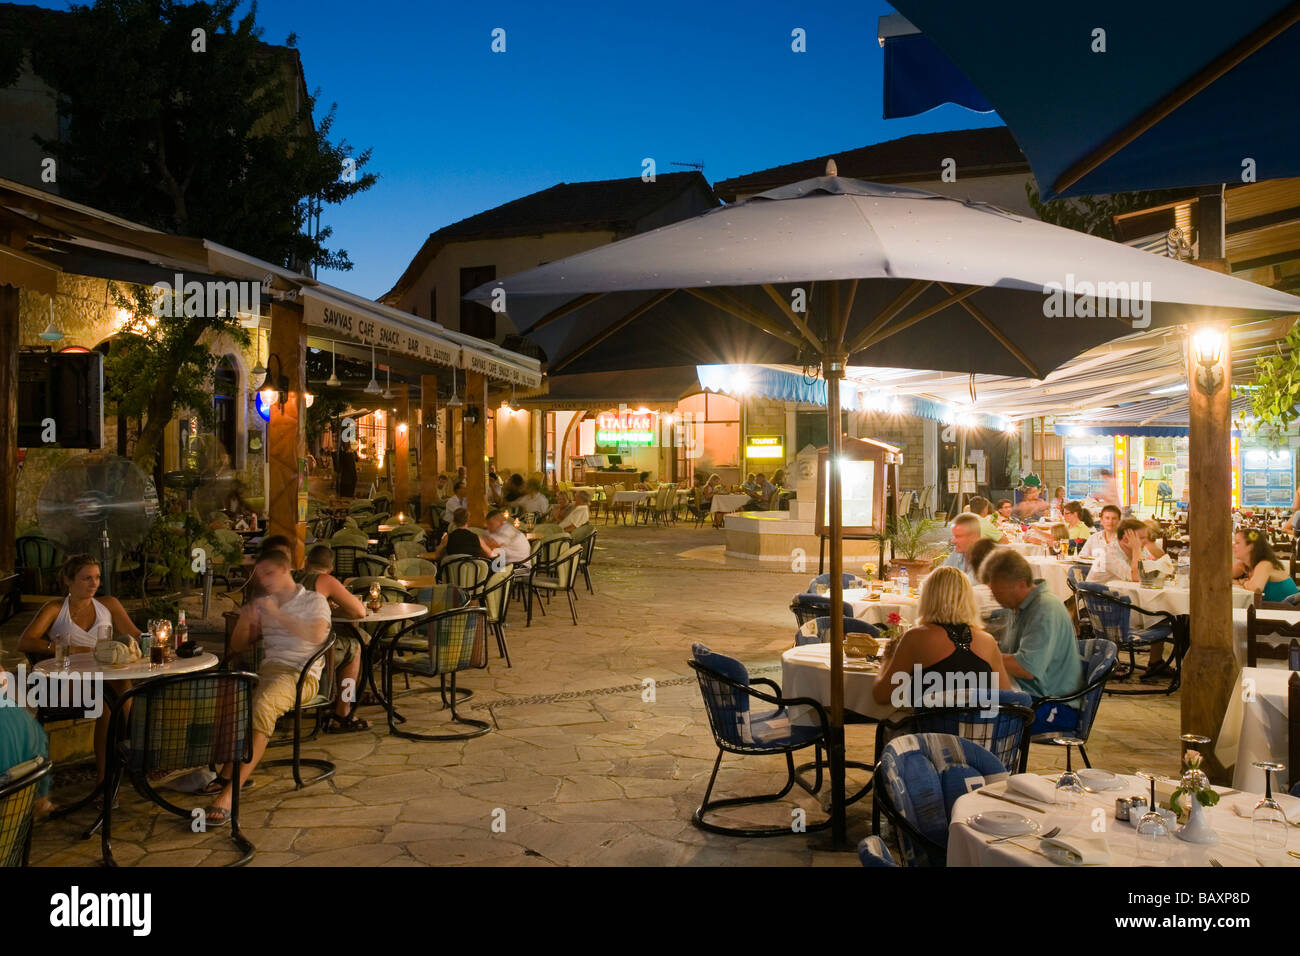 Menschen sitzen vor einem Restaurant, Café am Abend Dorf quadratisch, Polis,  Zypern Süd, Zypern Stockfotografie - Alamy